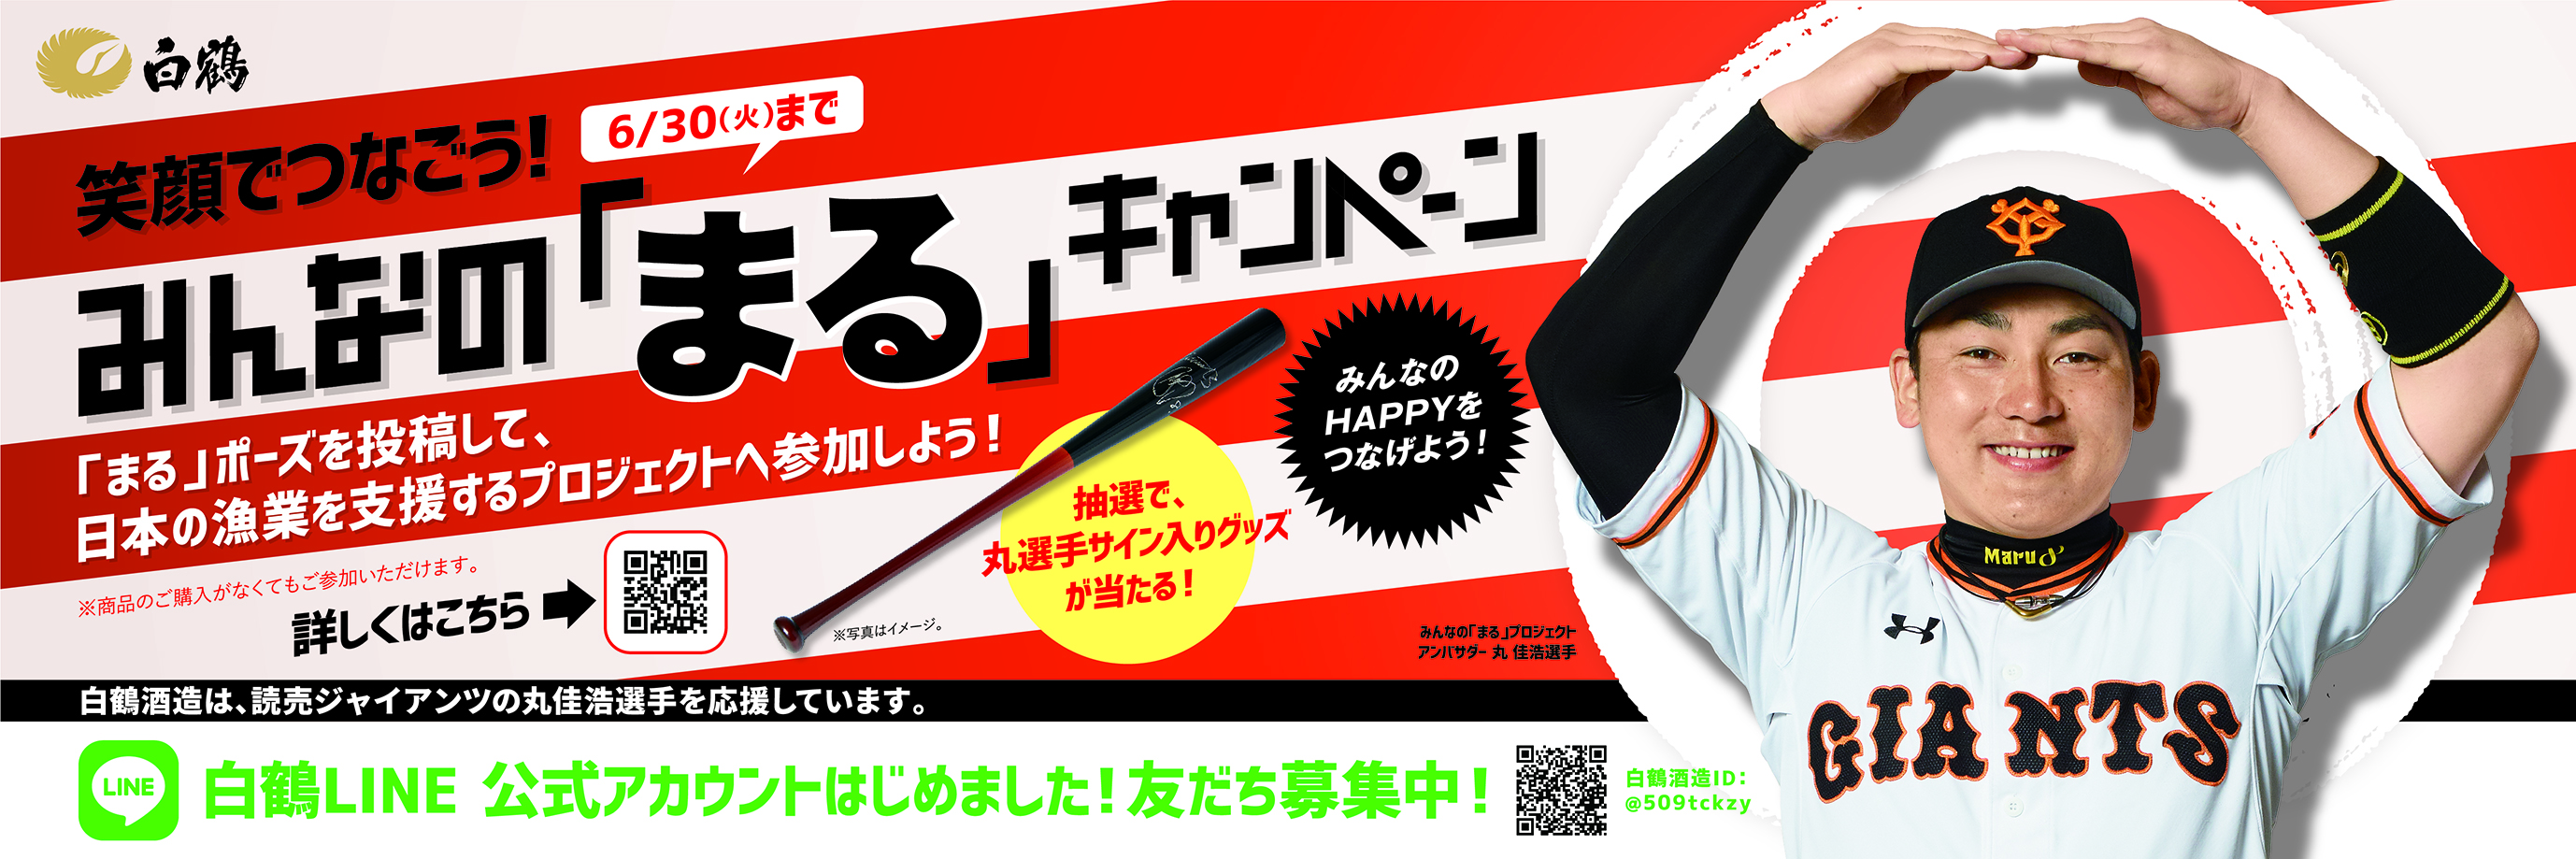 プロ野球ファンに楽しみを 日本の食文化に元気を 読売ジャイアンツ 丸佳浩選手とともに 日本の漁業 を応援 笑顔でつなごう みんなの まる キャンペーン スタート Newscast